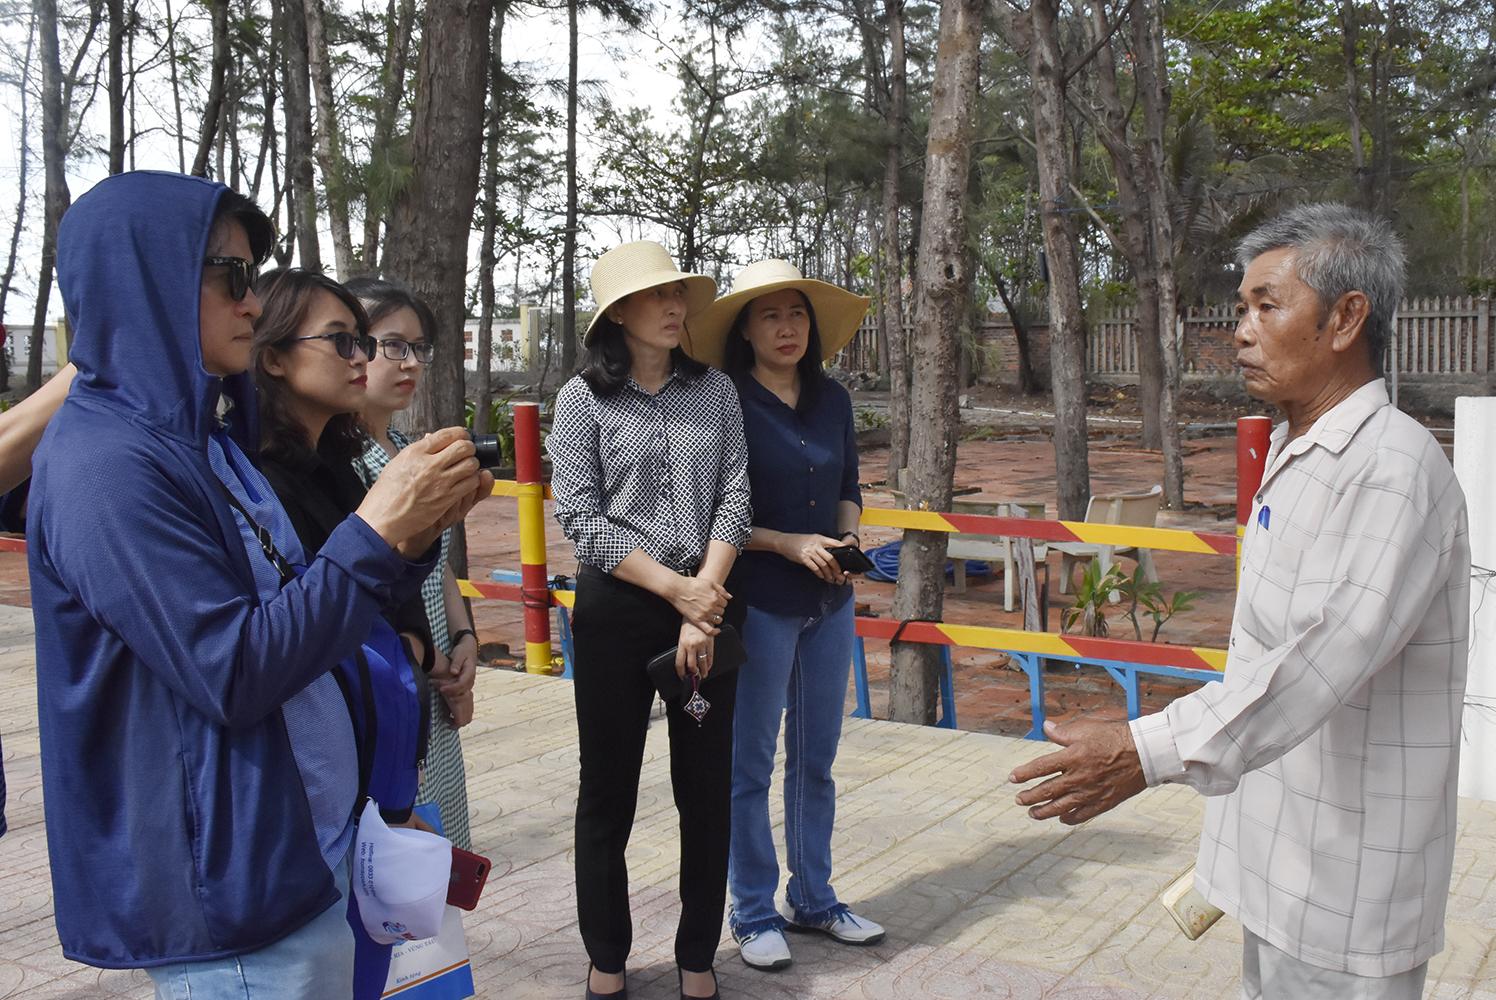 Ông Lê Văn Hời, Trưởng Ban cúng tế Dinh Ông Nam Hải giới thiệu về Nghĩa địa cá Ông cho du khách.